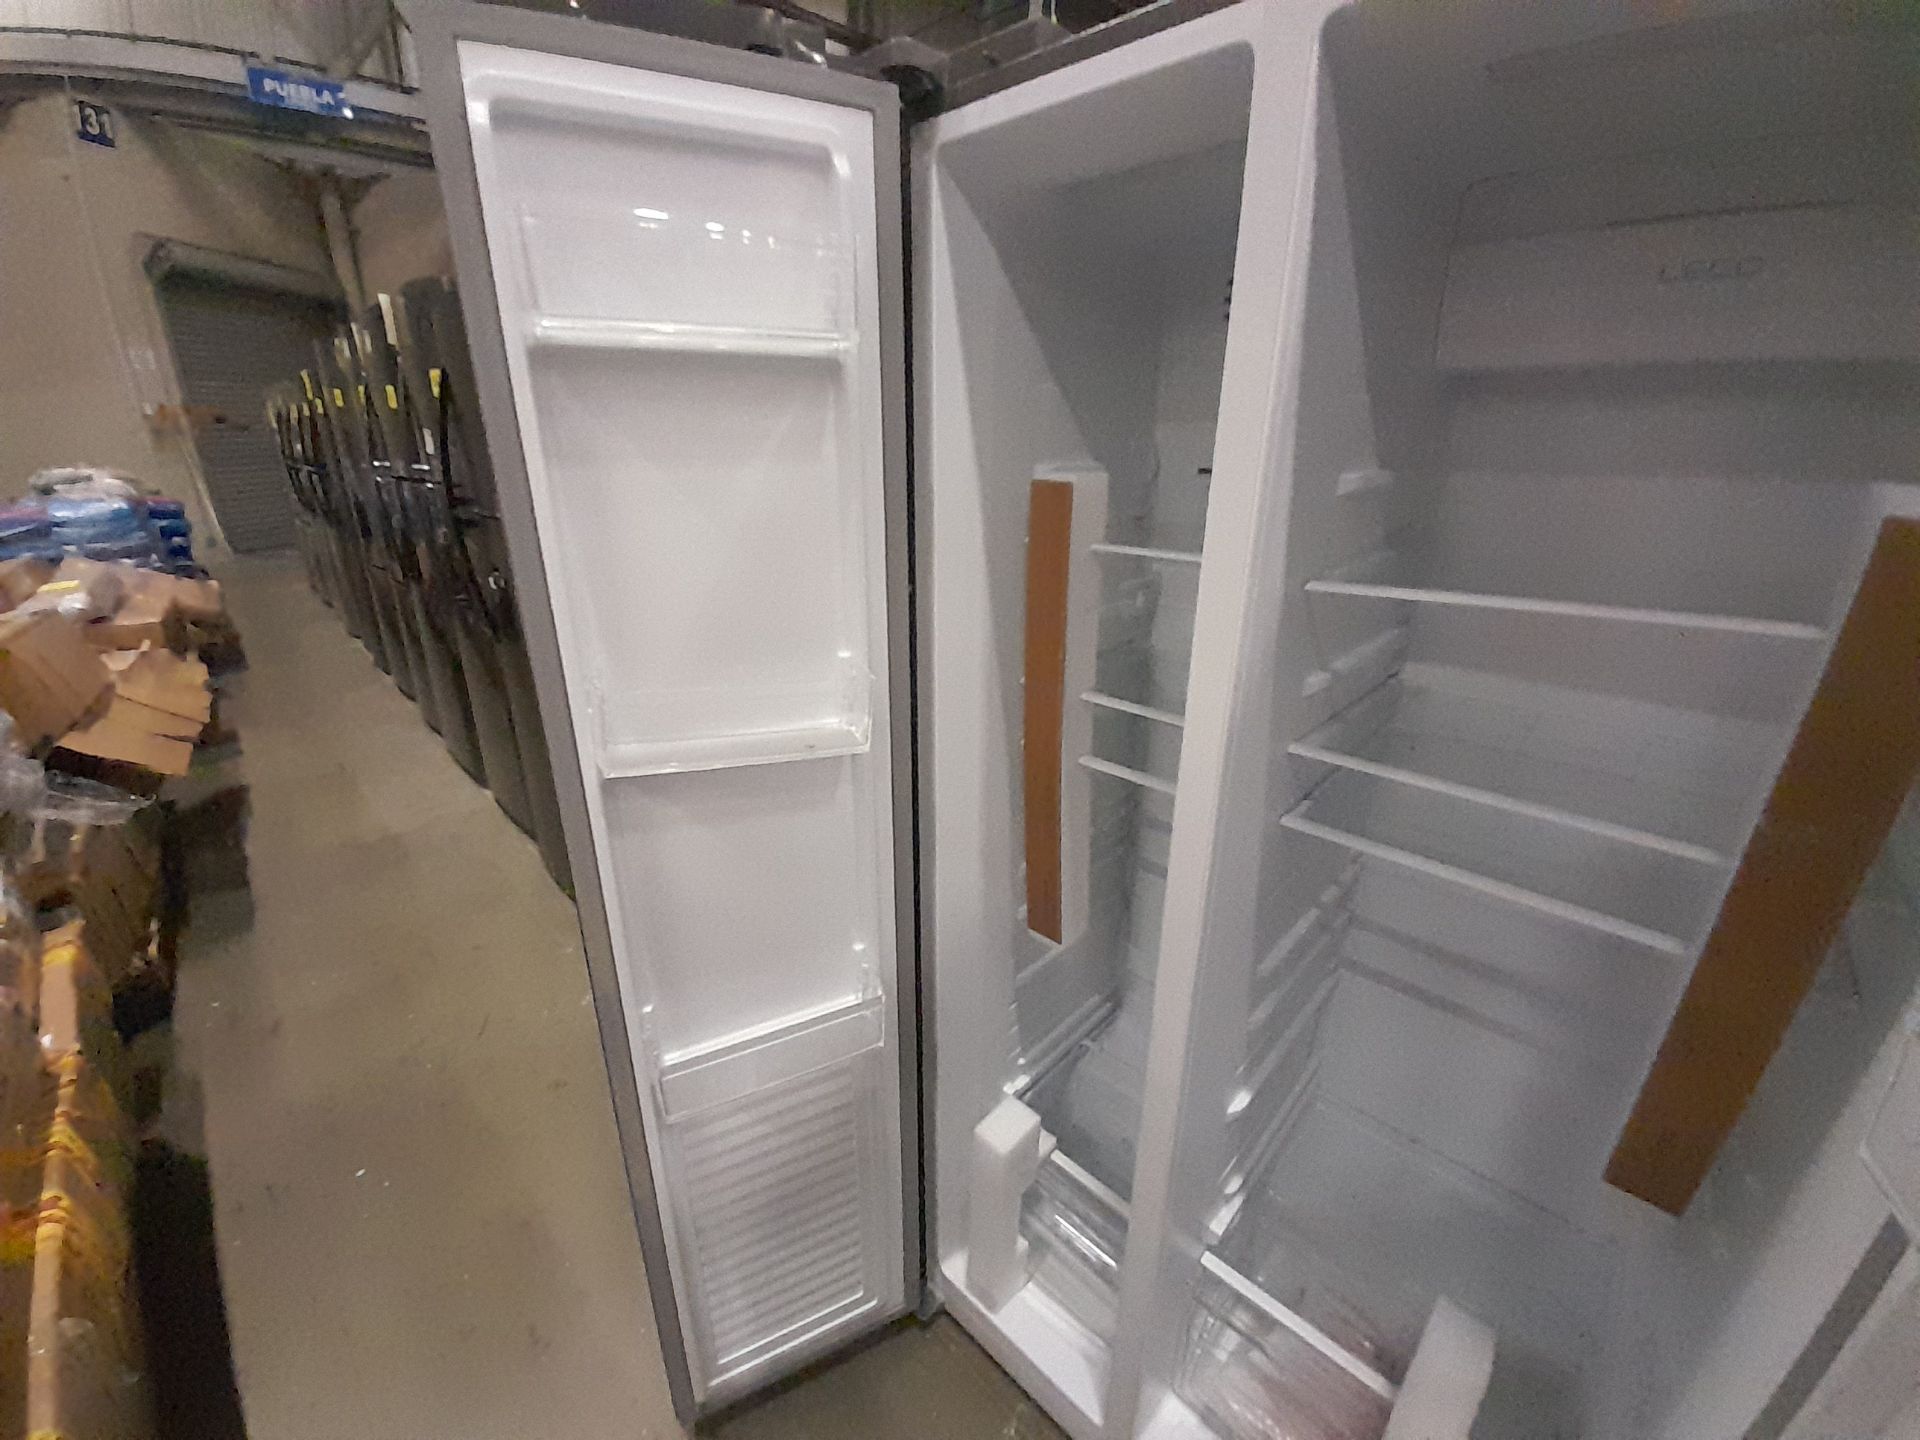 Lote de 1 Refrigerador Marca OSTER, Modelo SBSME20, Serie ND, Color GRIS (No se asegura su func - Image 5 of 7